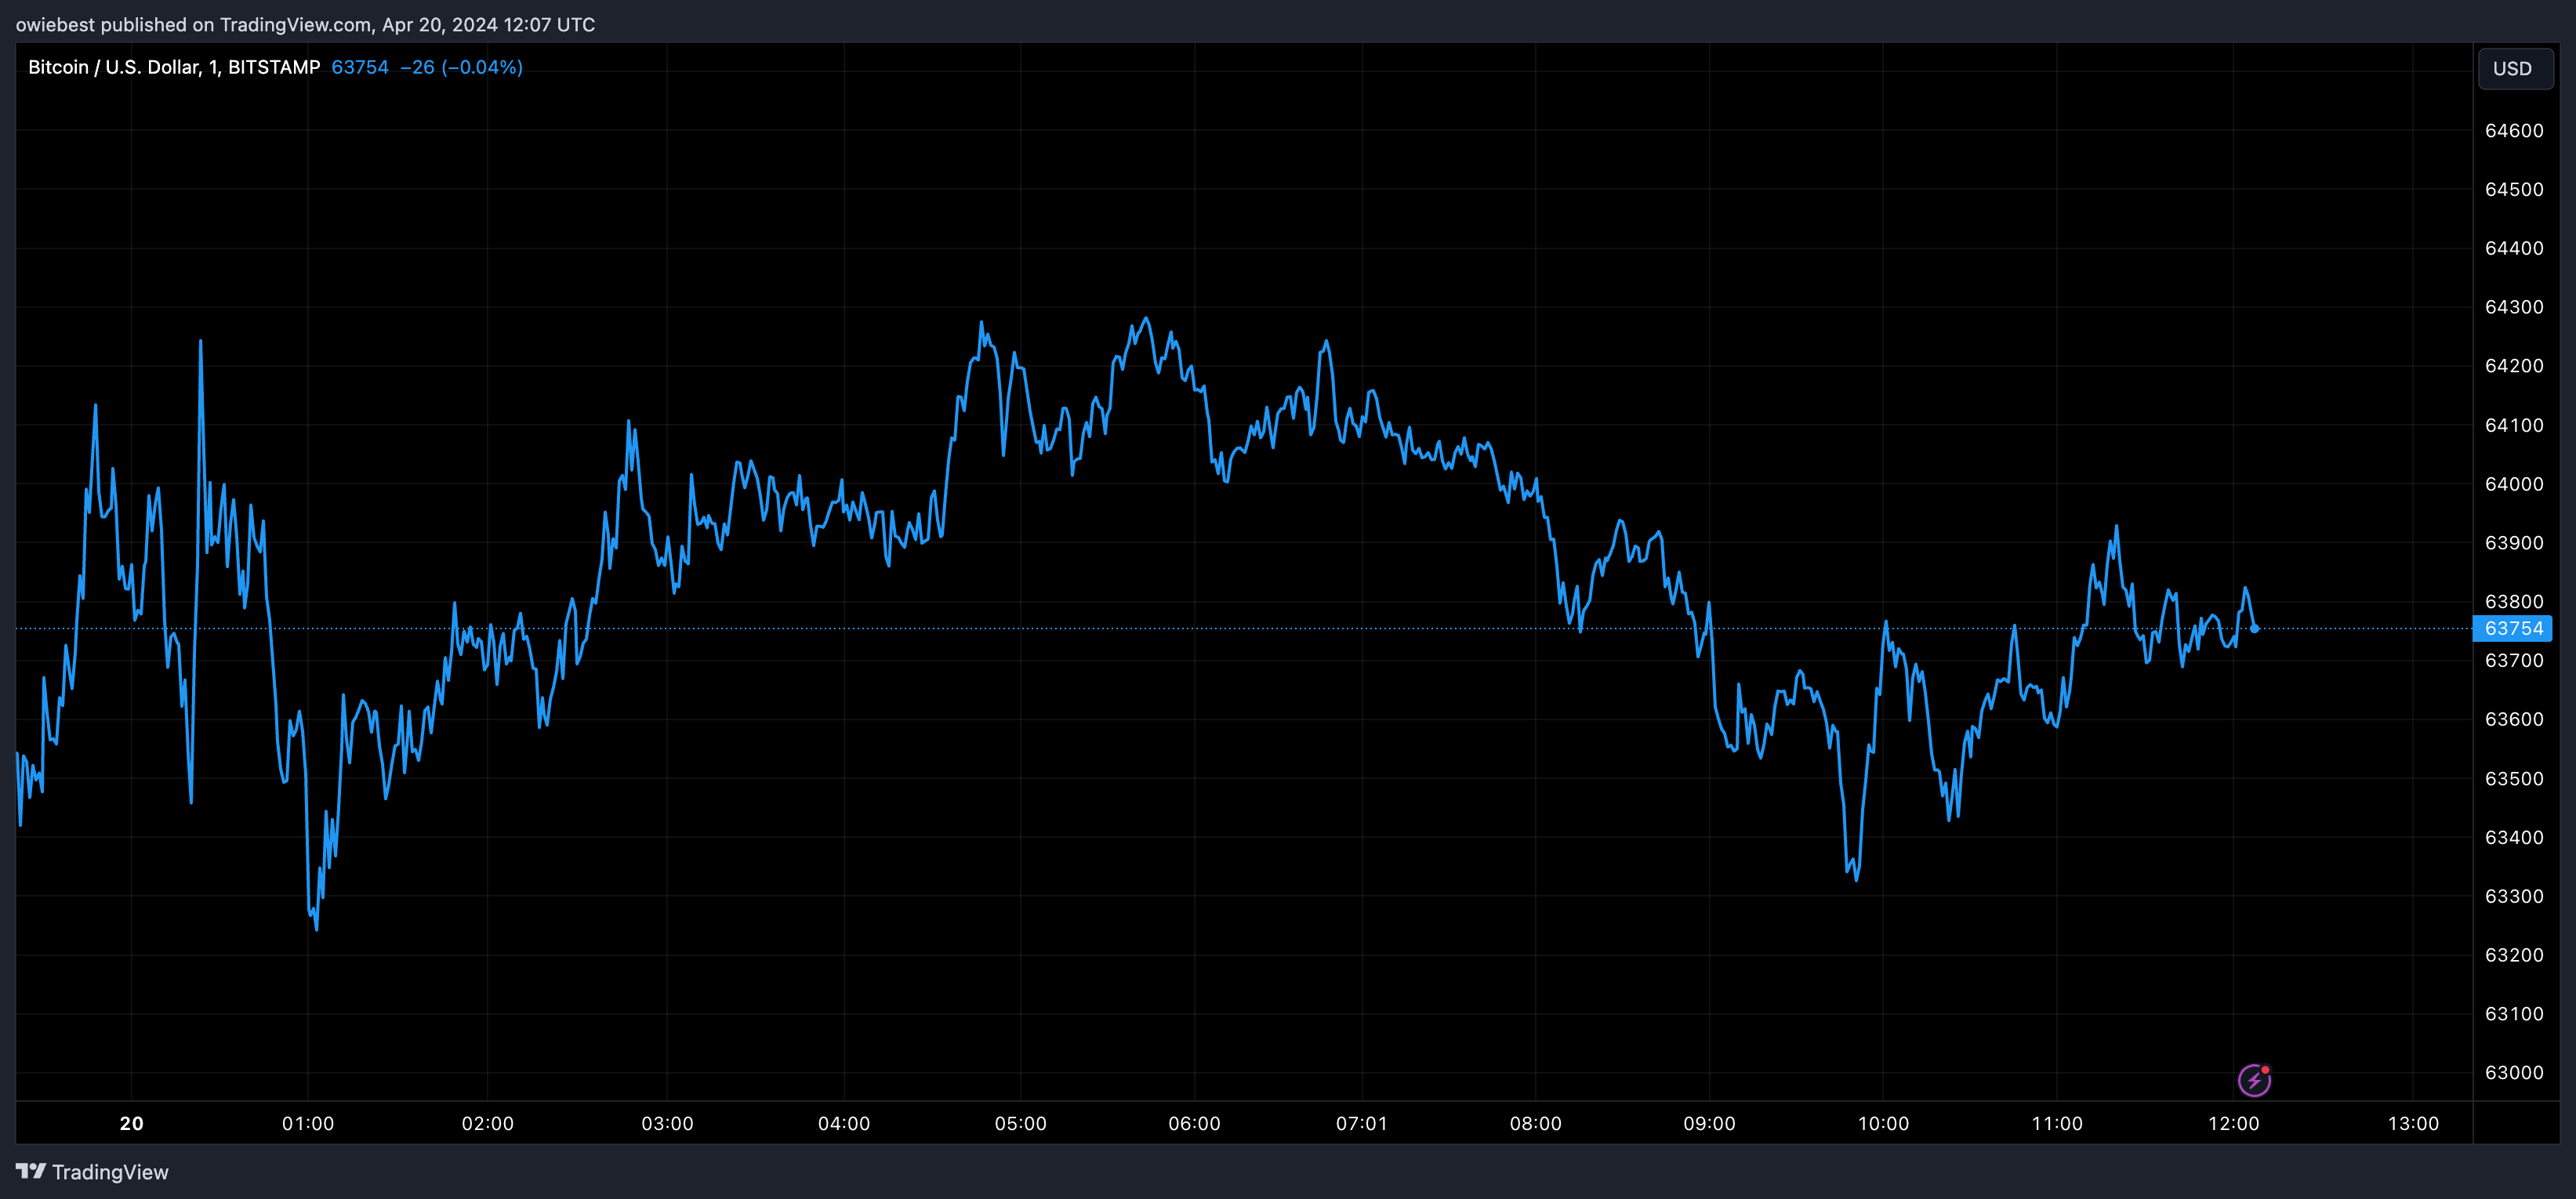 График цен на биткоин от Tradingview.com (половинивание Биткоин)